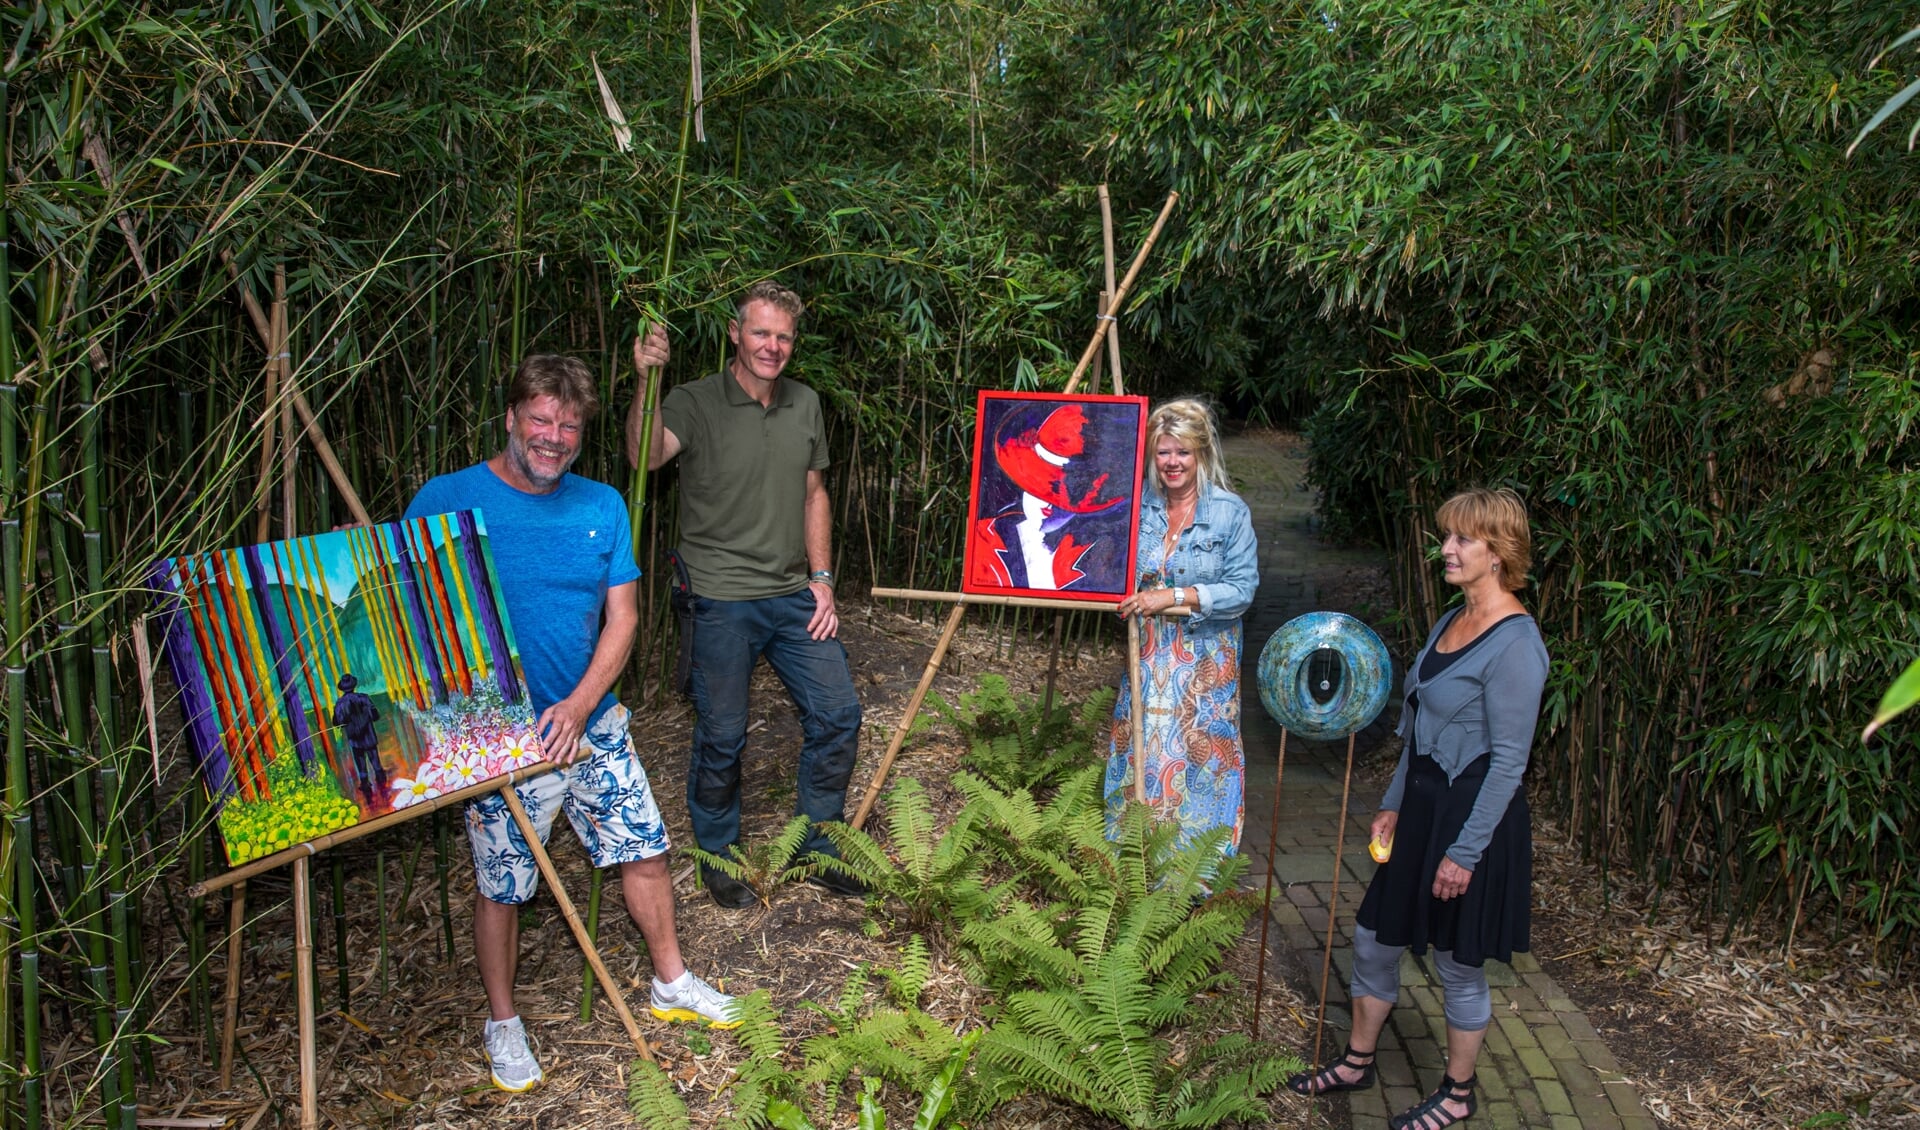 Eddy de Boer, Eelko Bootsman, Tilly Singer en Fredie Schenk (v.l.n.r.) in de bamboetuin. Iedereen is tijdens Schellinkhout te Kijk van harte welkom om de kunst én de tuin te bewonderen.